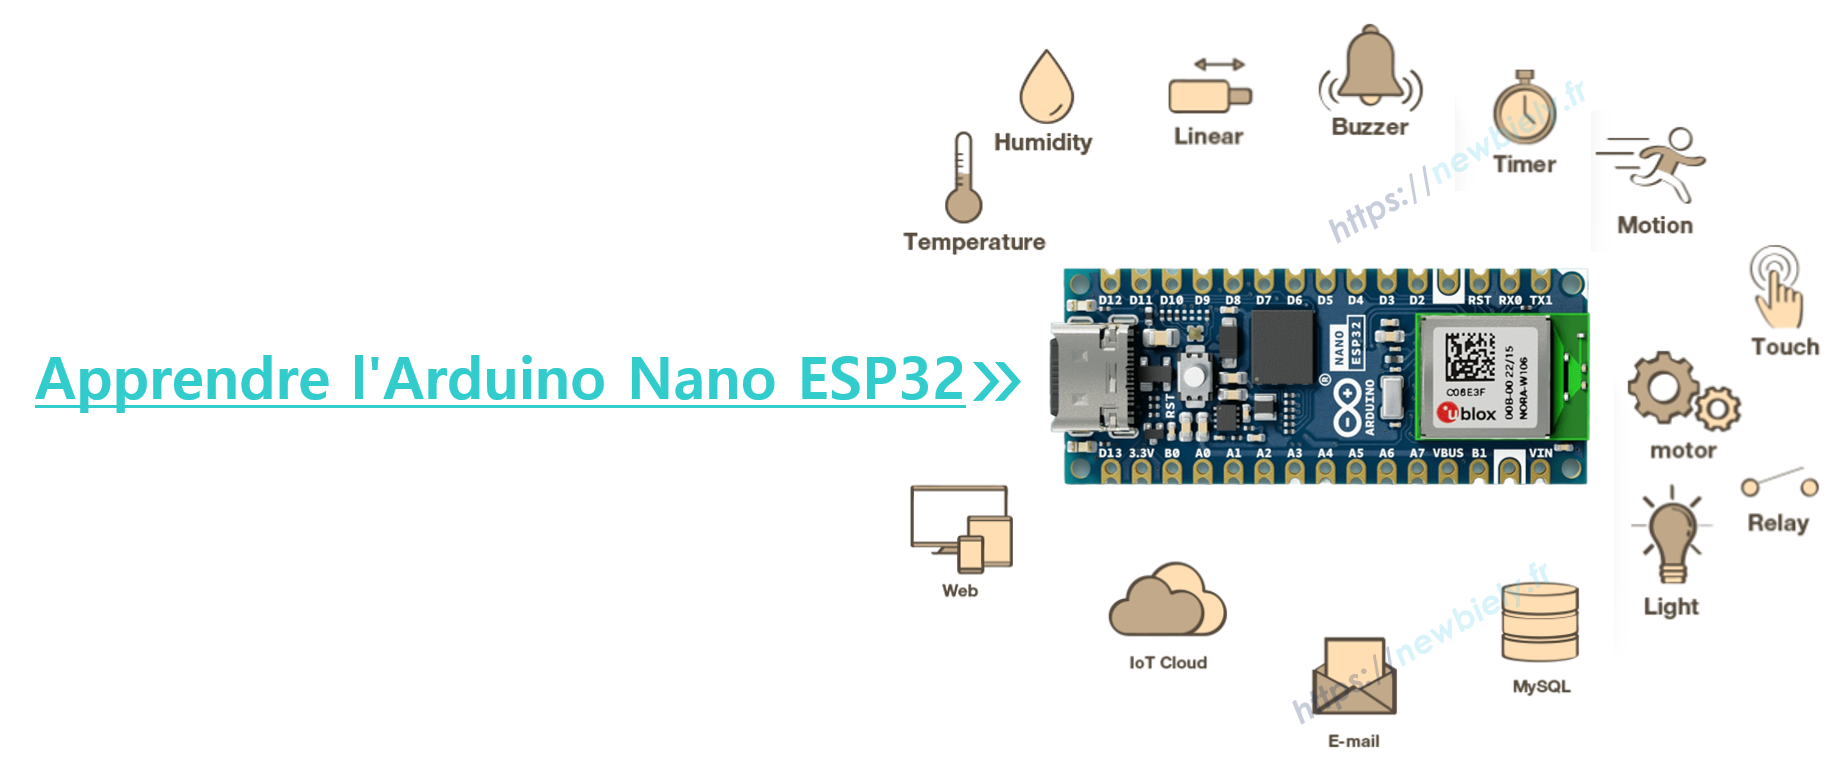 Apprendre l'Arduino Nano ESP32